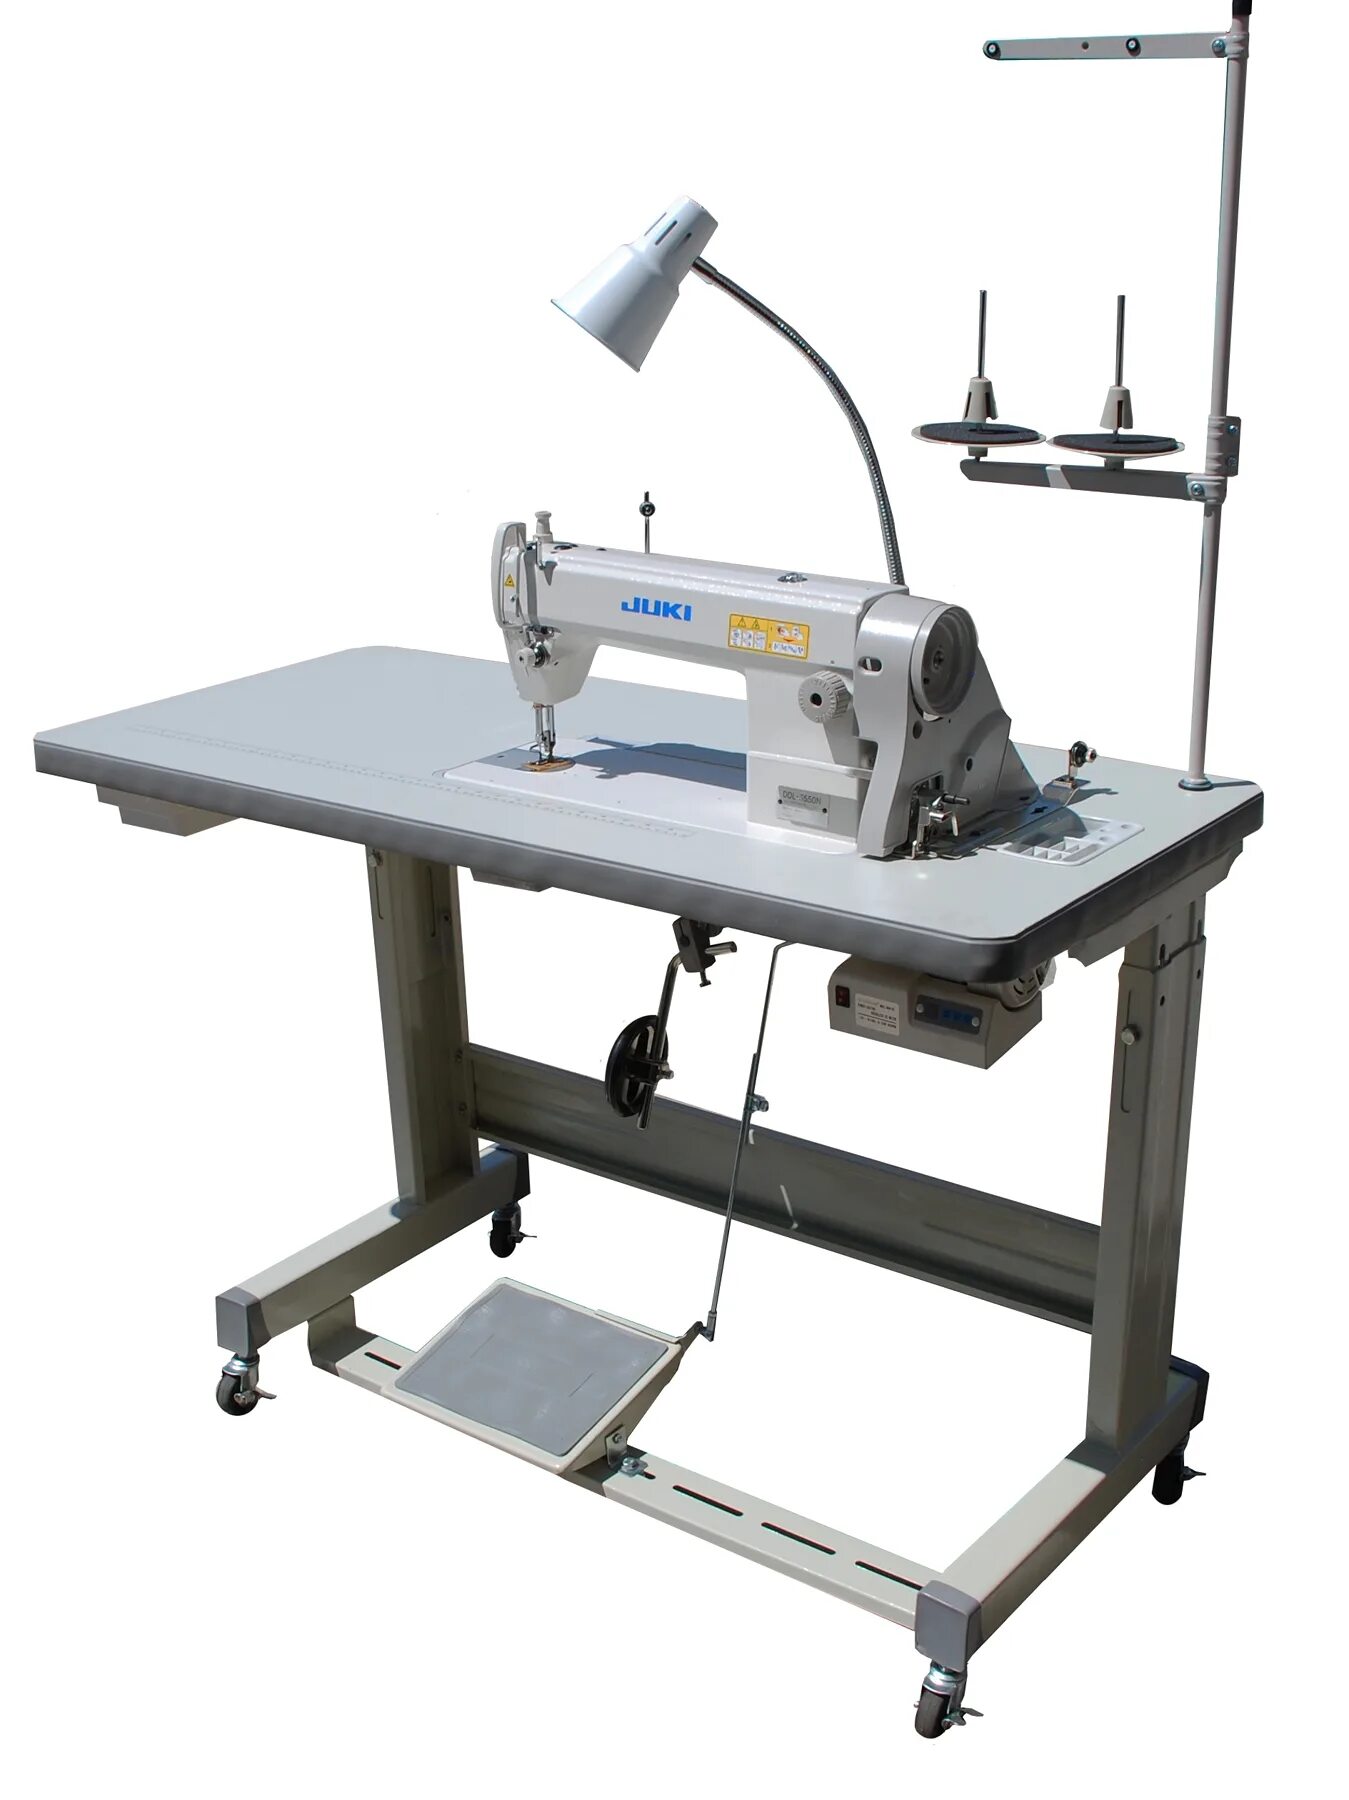 Швейные машины для производства. Juki швейная машина JK-8500. Вышивальная машинка Джуки Промышленная. Промышленная швейная машина Juki со столом. Промышленная швейная машинка p1000 шьет безблки.